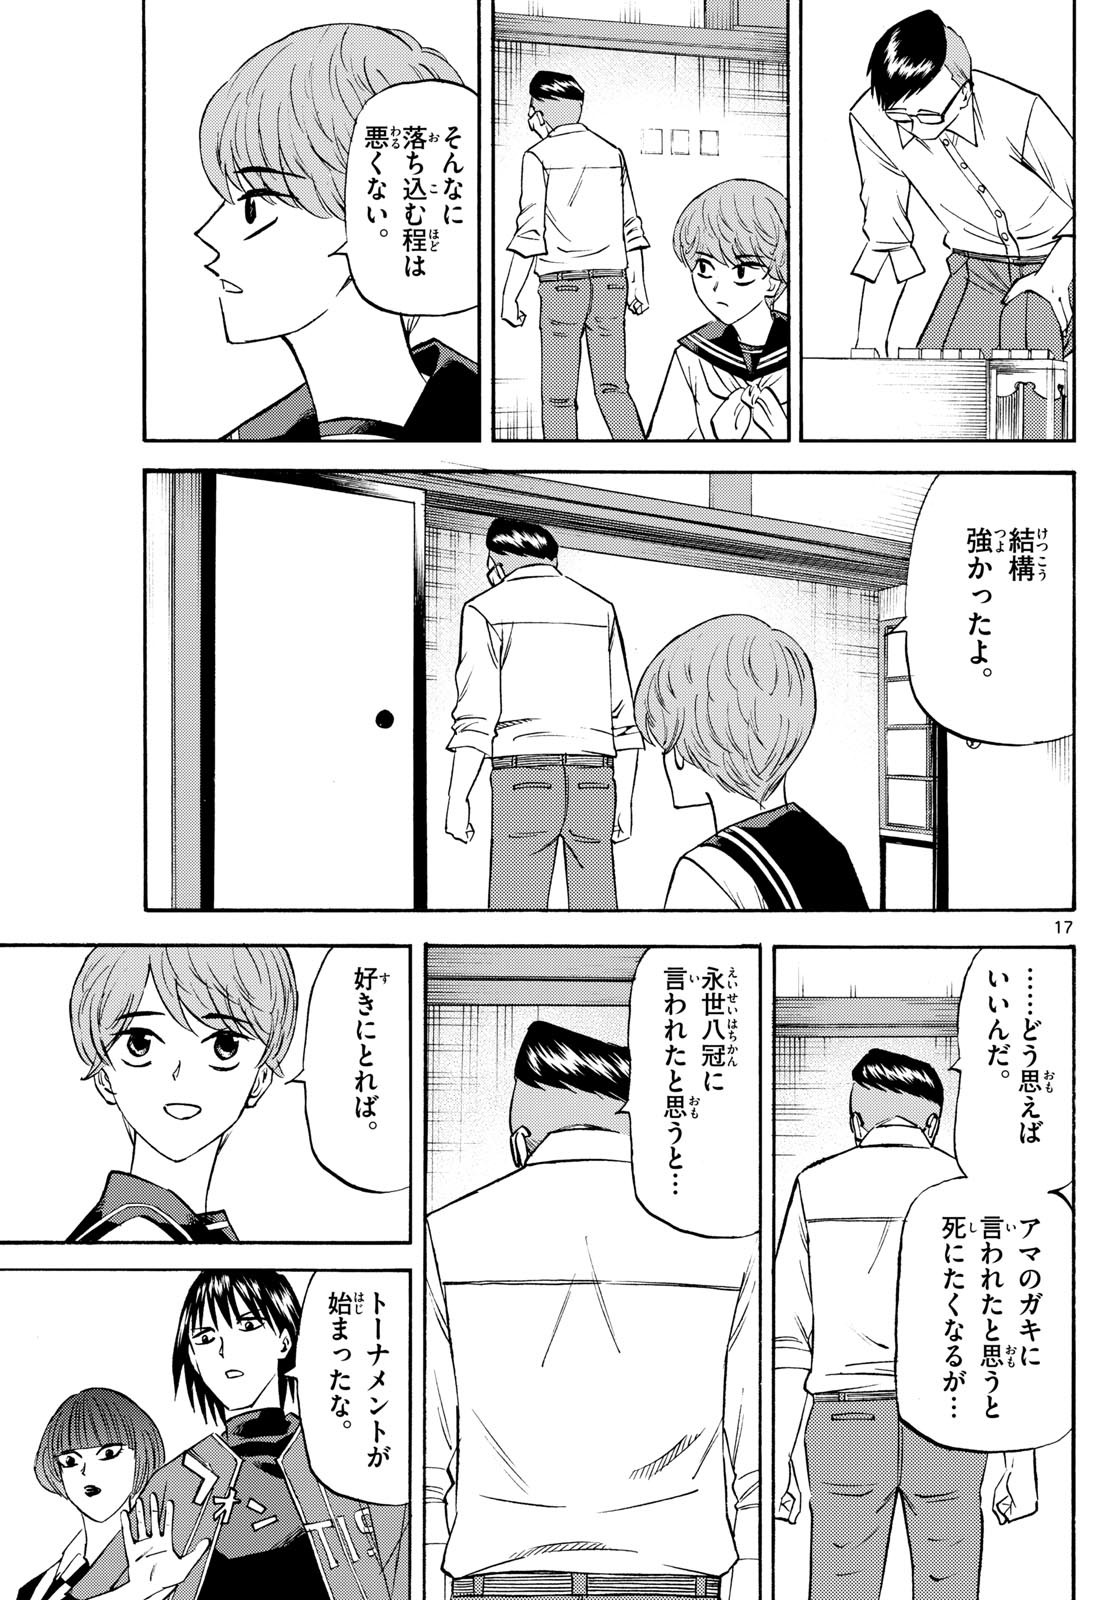 Ryu-to-Ichigo - Chapter 196 - Page 17